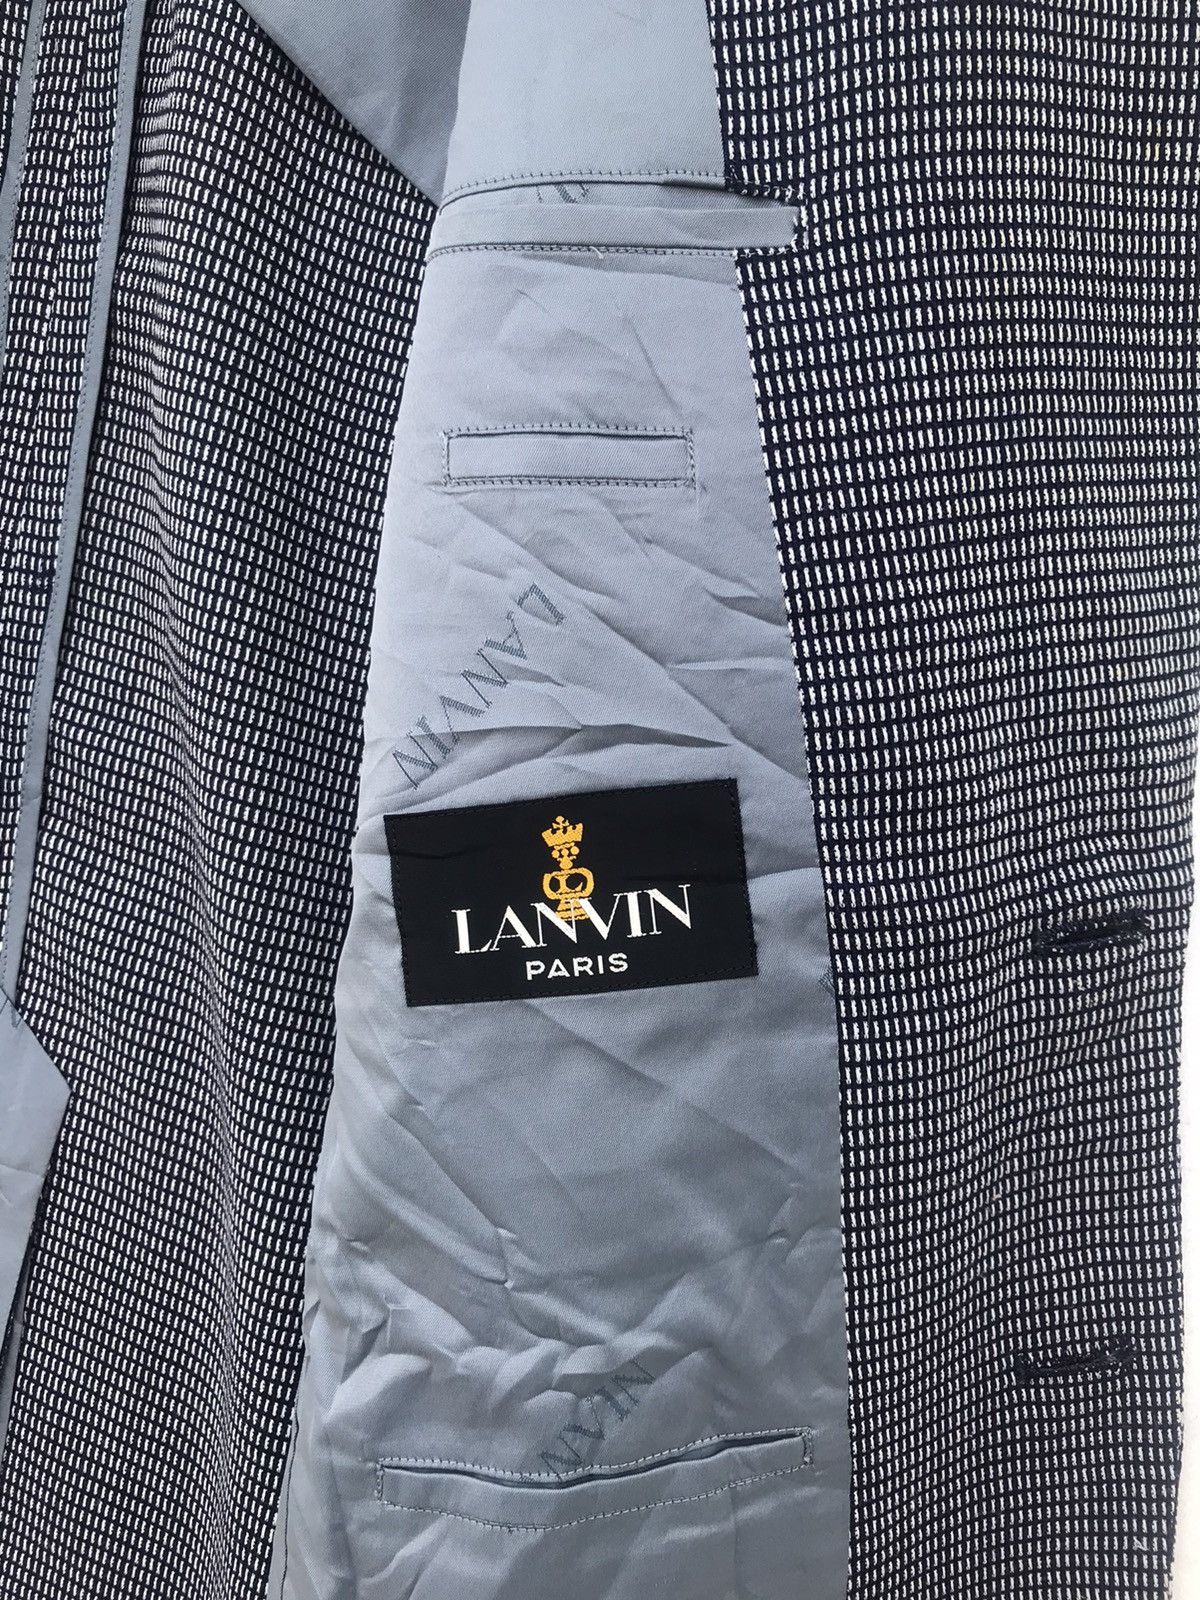 Luxury Lanvin Paris Suit Jacket - 3